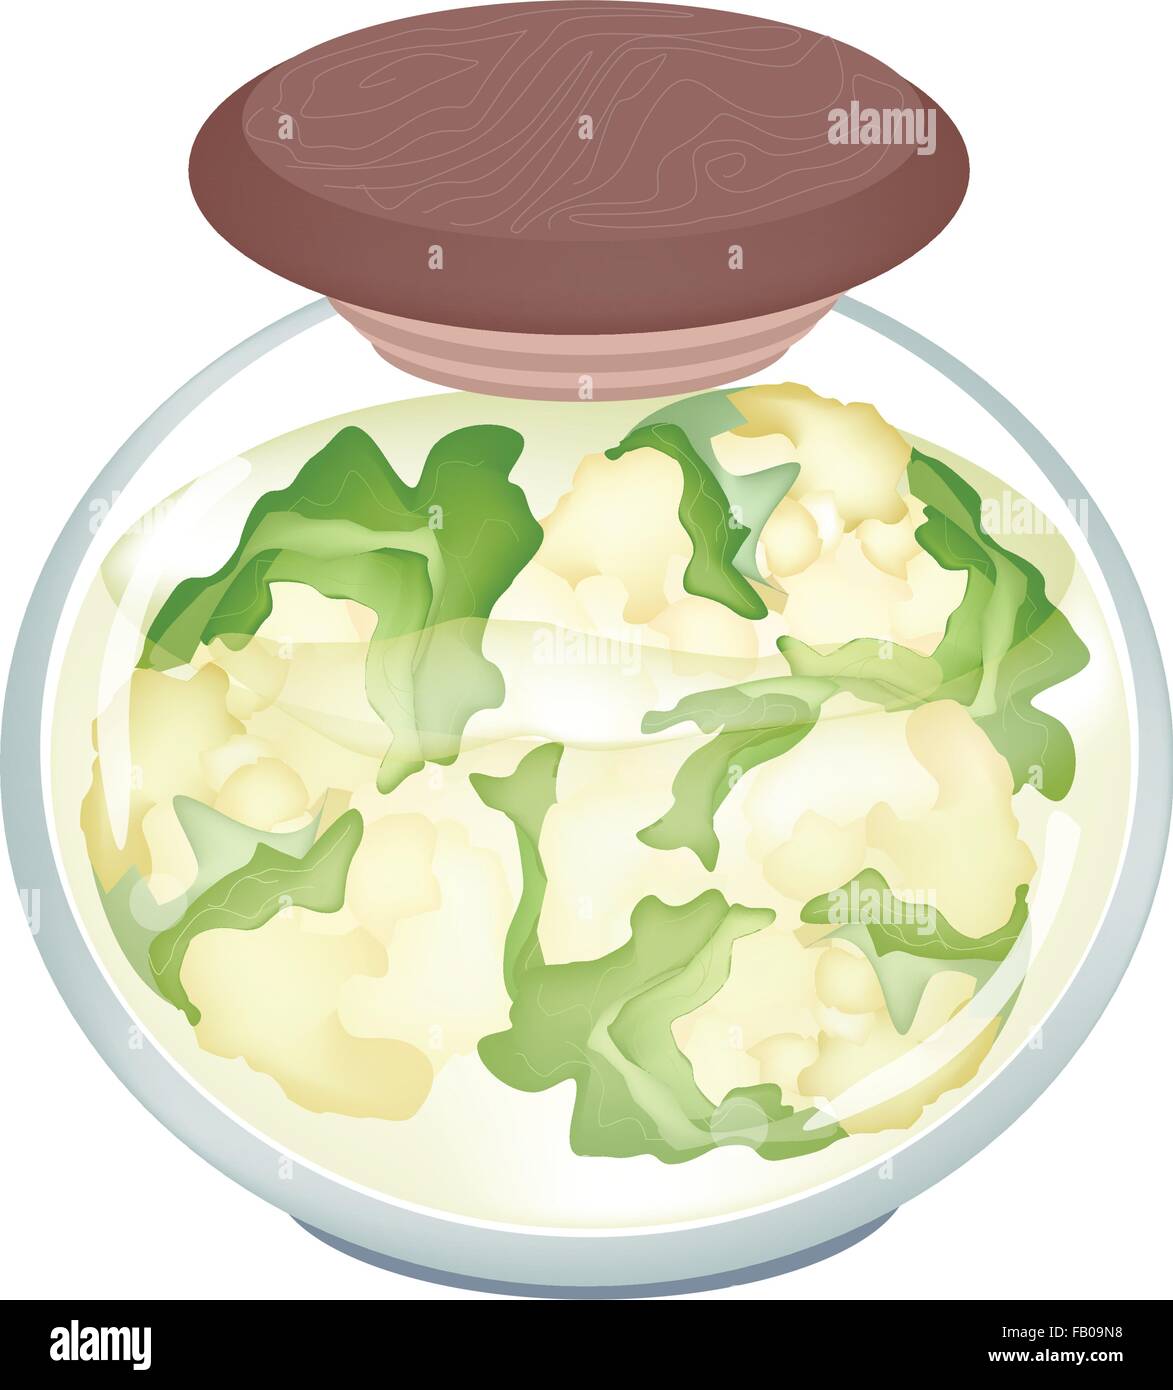 Gemüse, zur Veranschaulichung der eingelegte Weißer Blumenkohl in Salzwasser, Essig und Salz in einem Glas, Isolated on White Background Stock Vektor